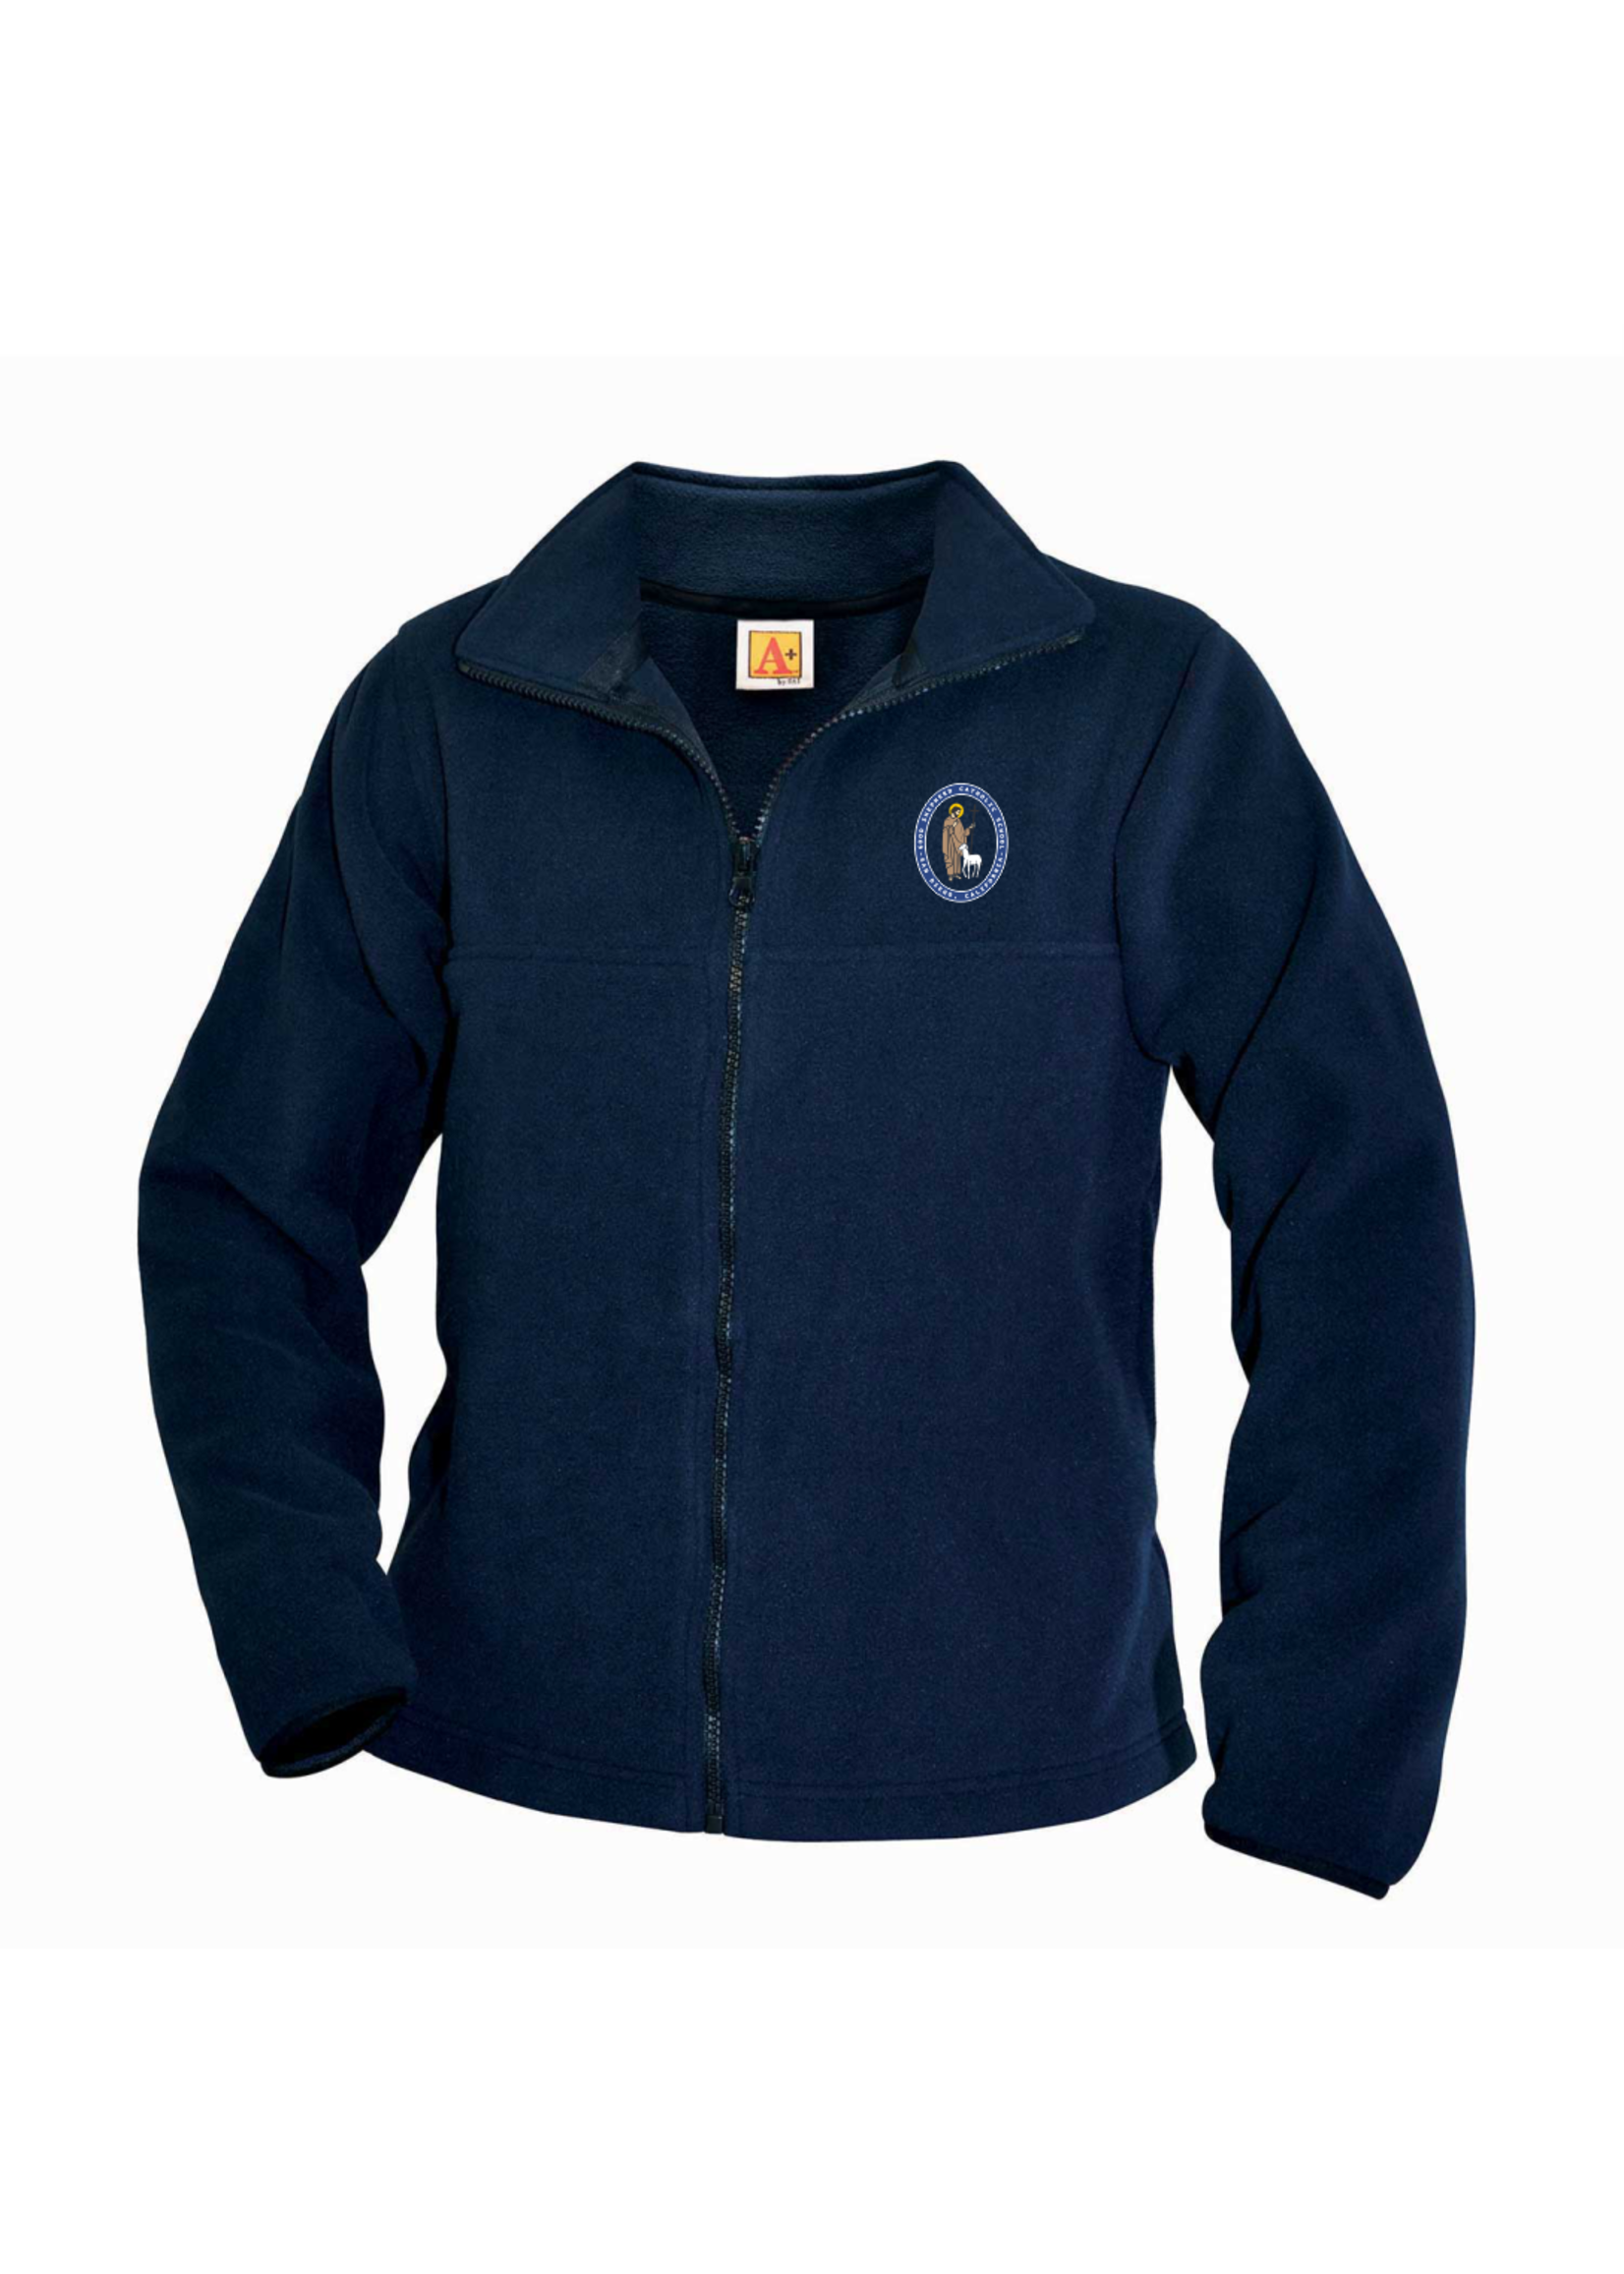 GSCS Navy Fleece Full Zip Jacket